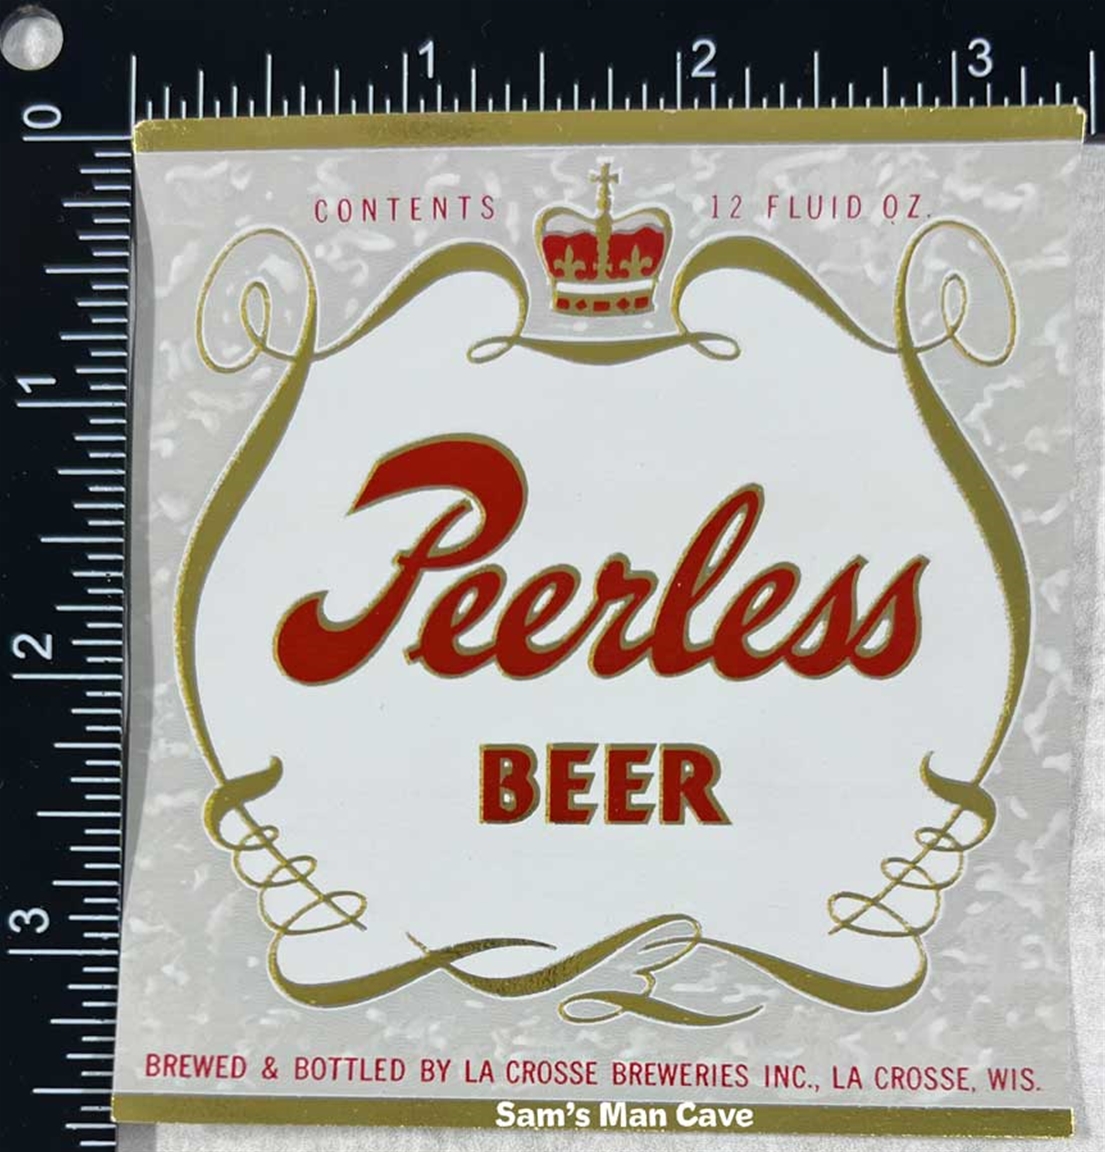 Peerless Beer Label